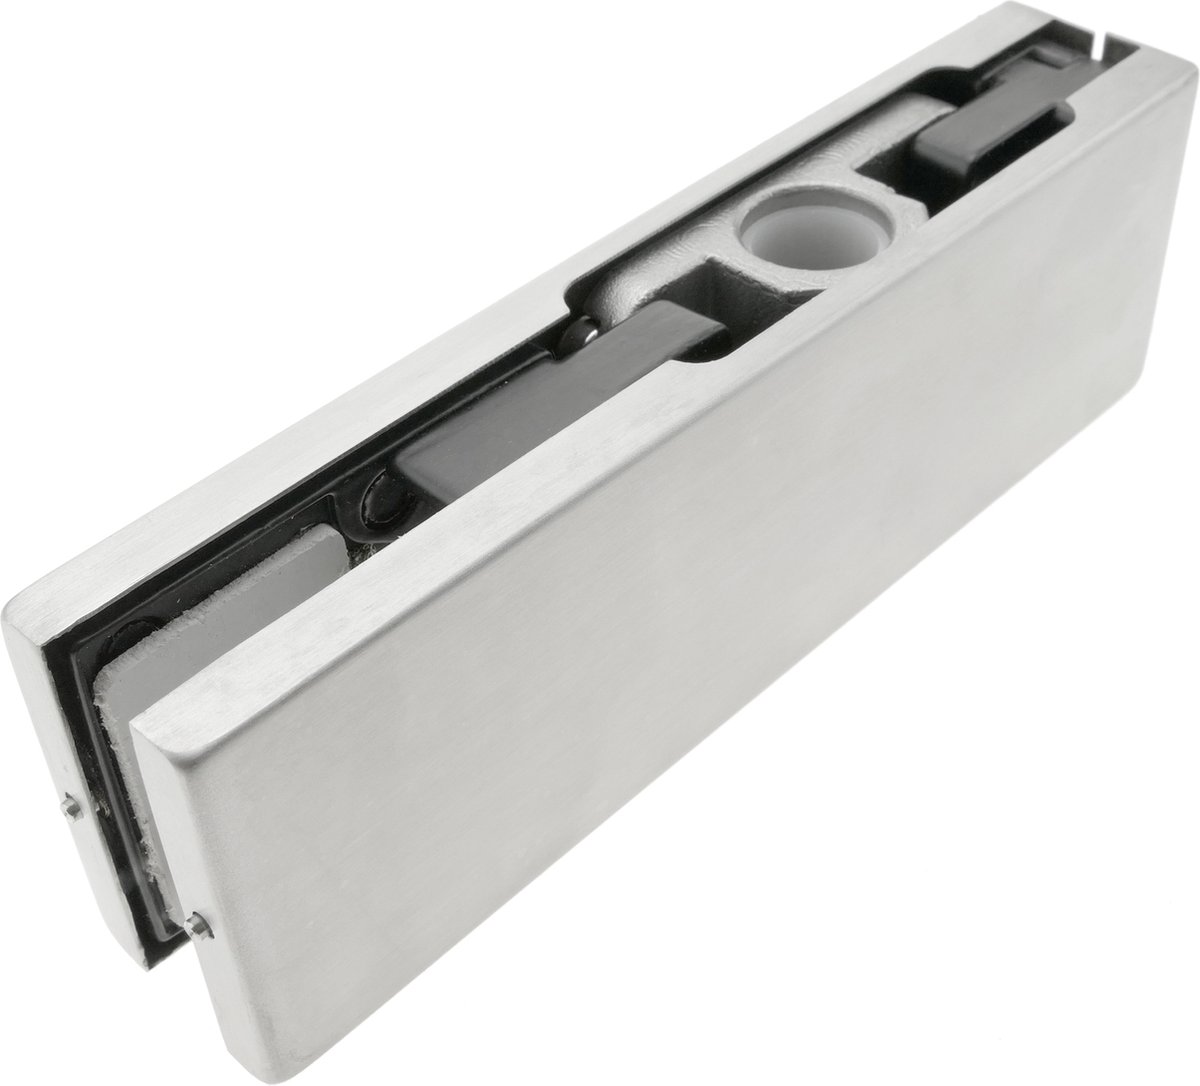 PrimeMatik - Pernio en aluminium bovenscharnier voor glazen deur voor vloerdeursluiters